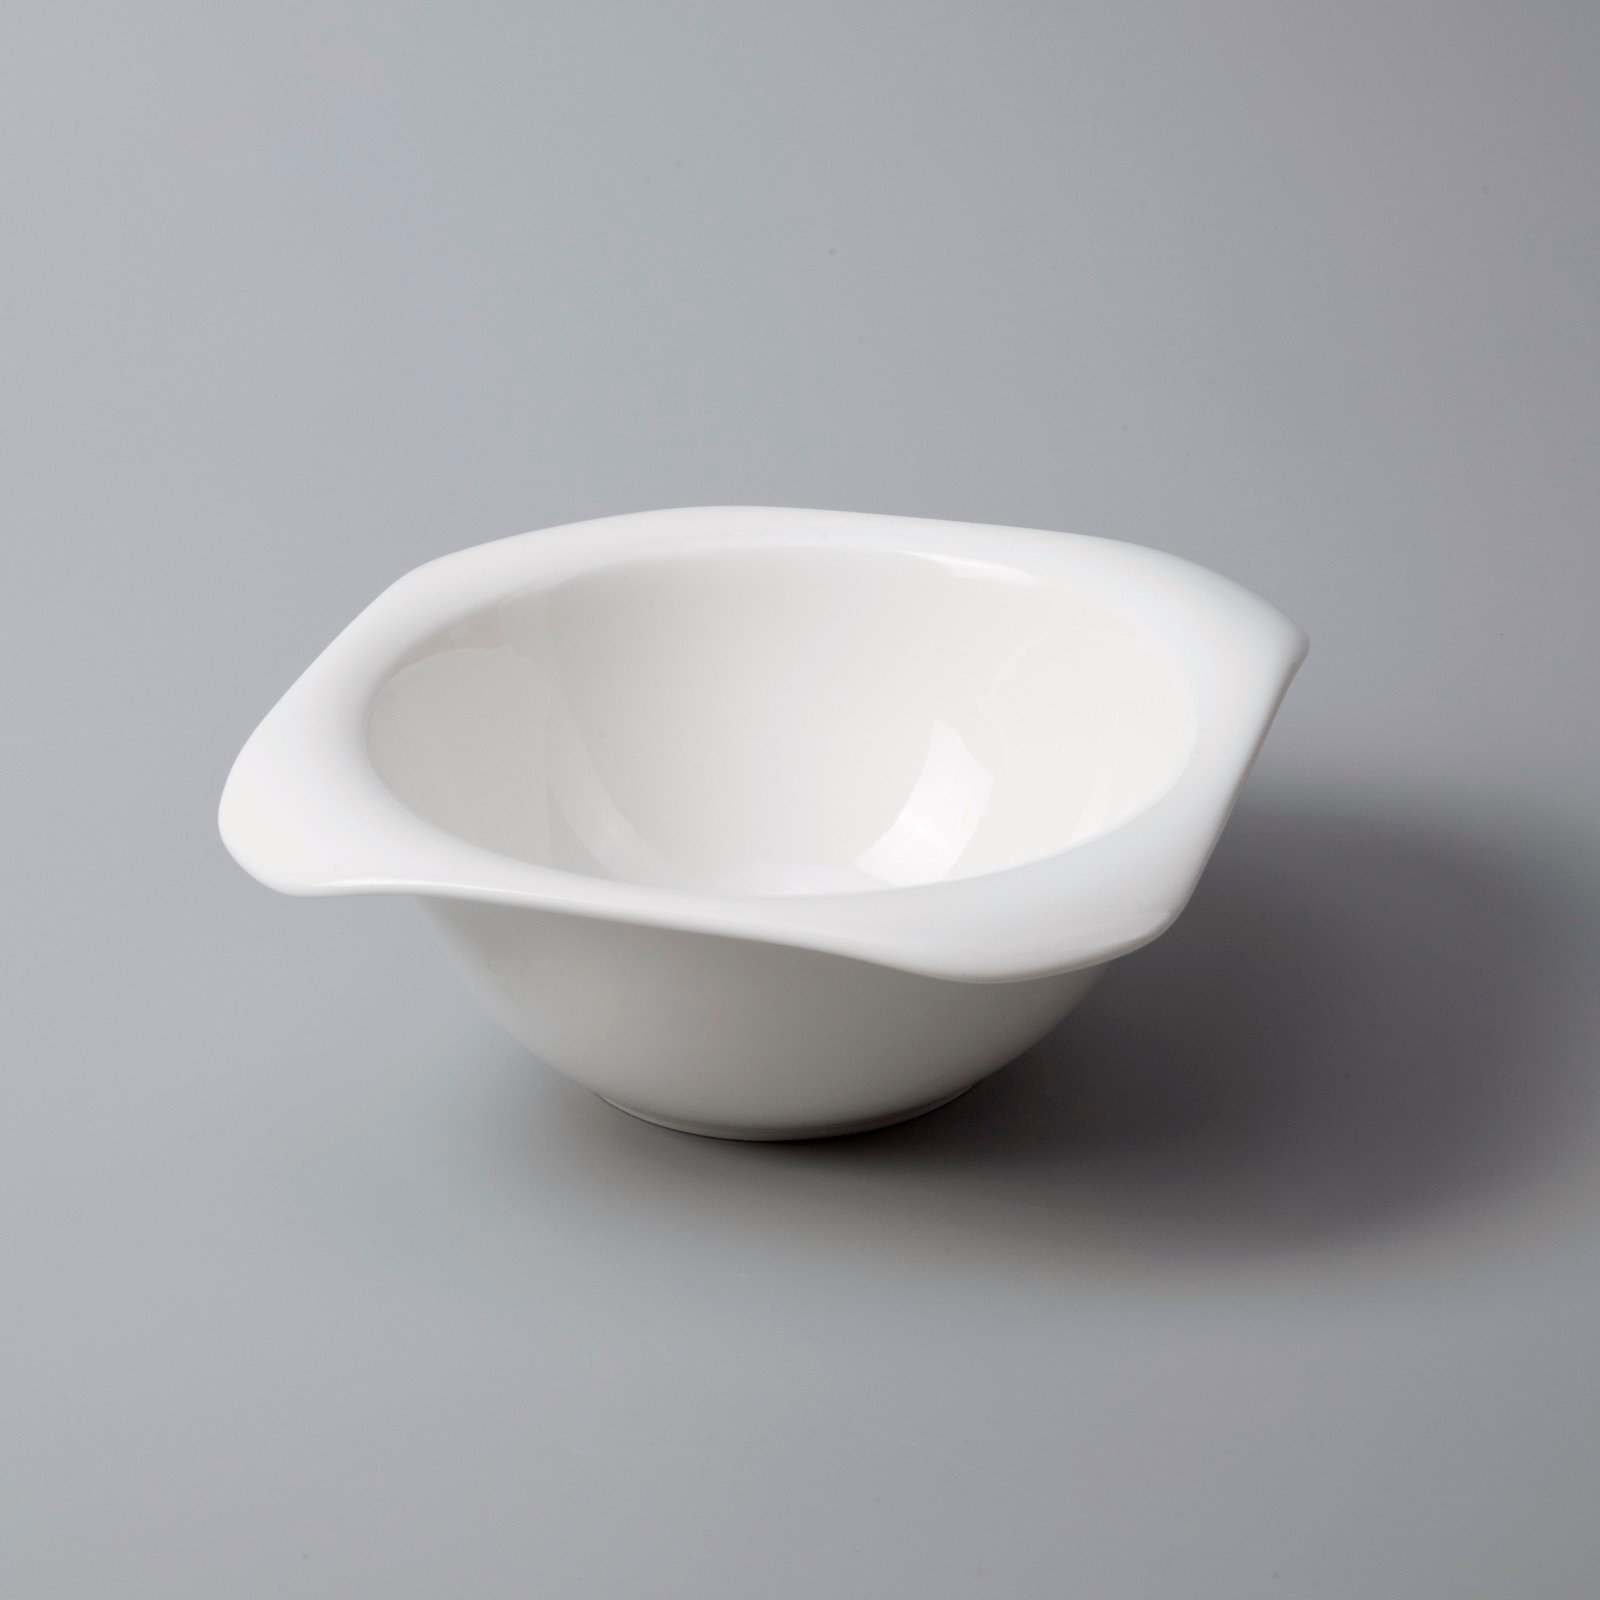 white porcelain tableware wang restaurant Two Eight Brand